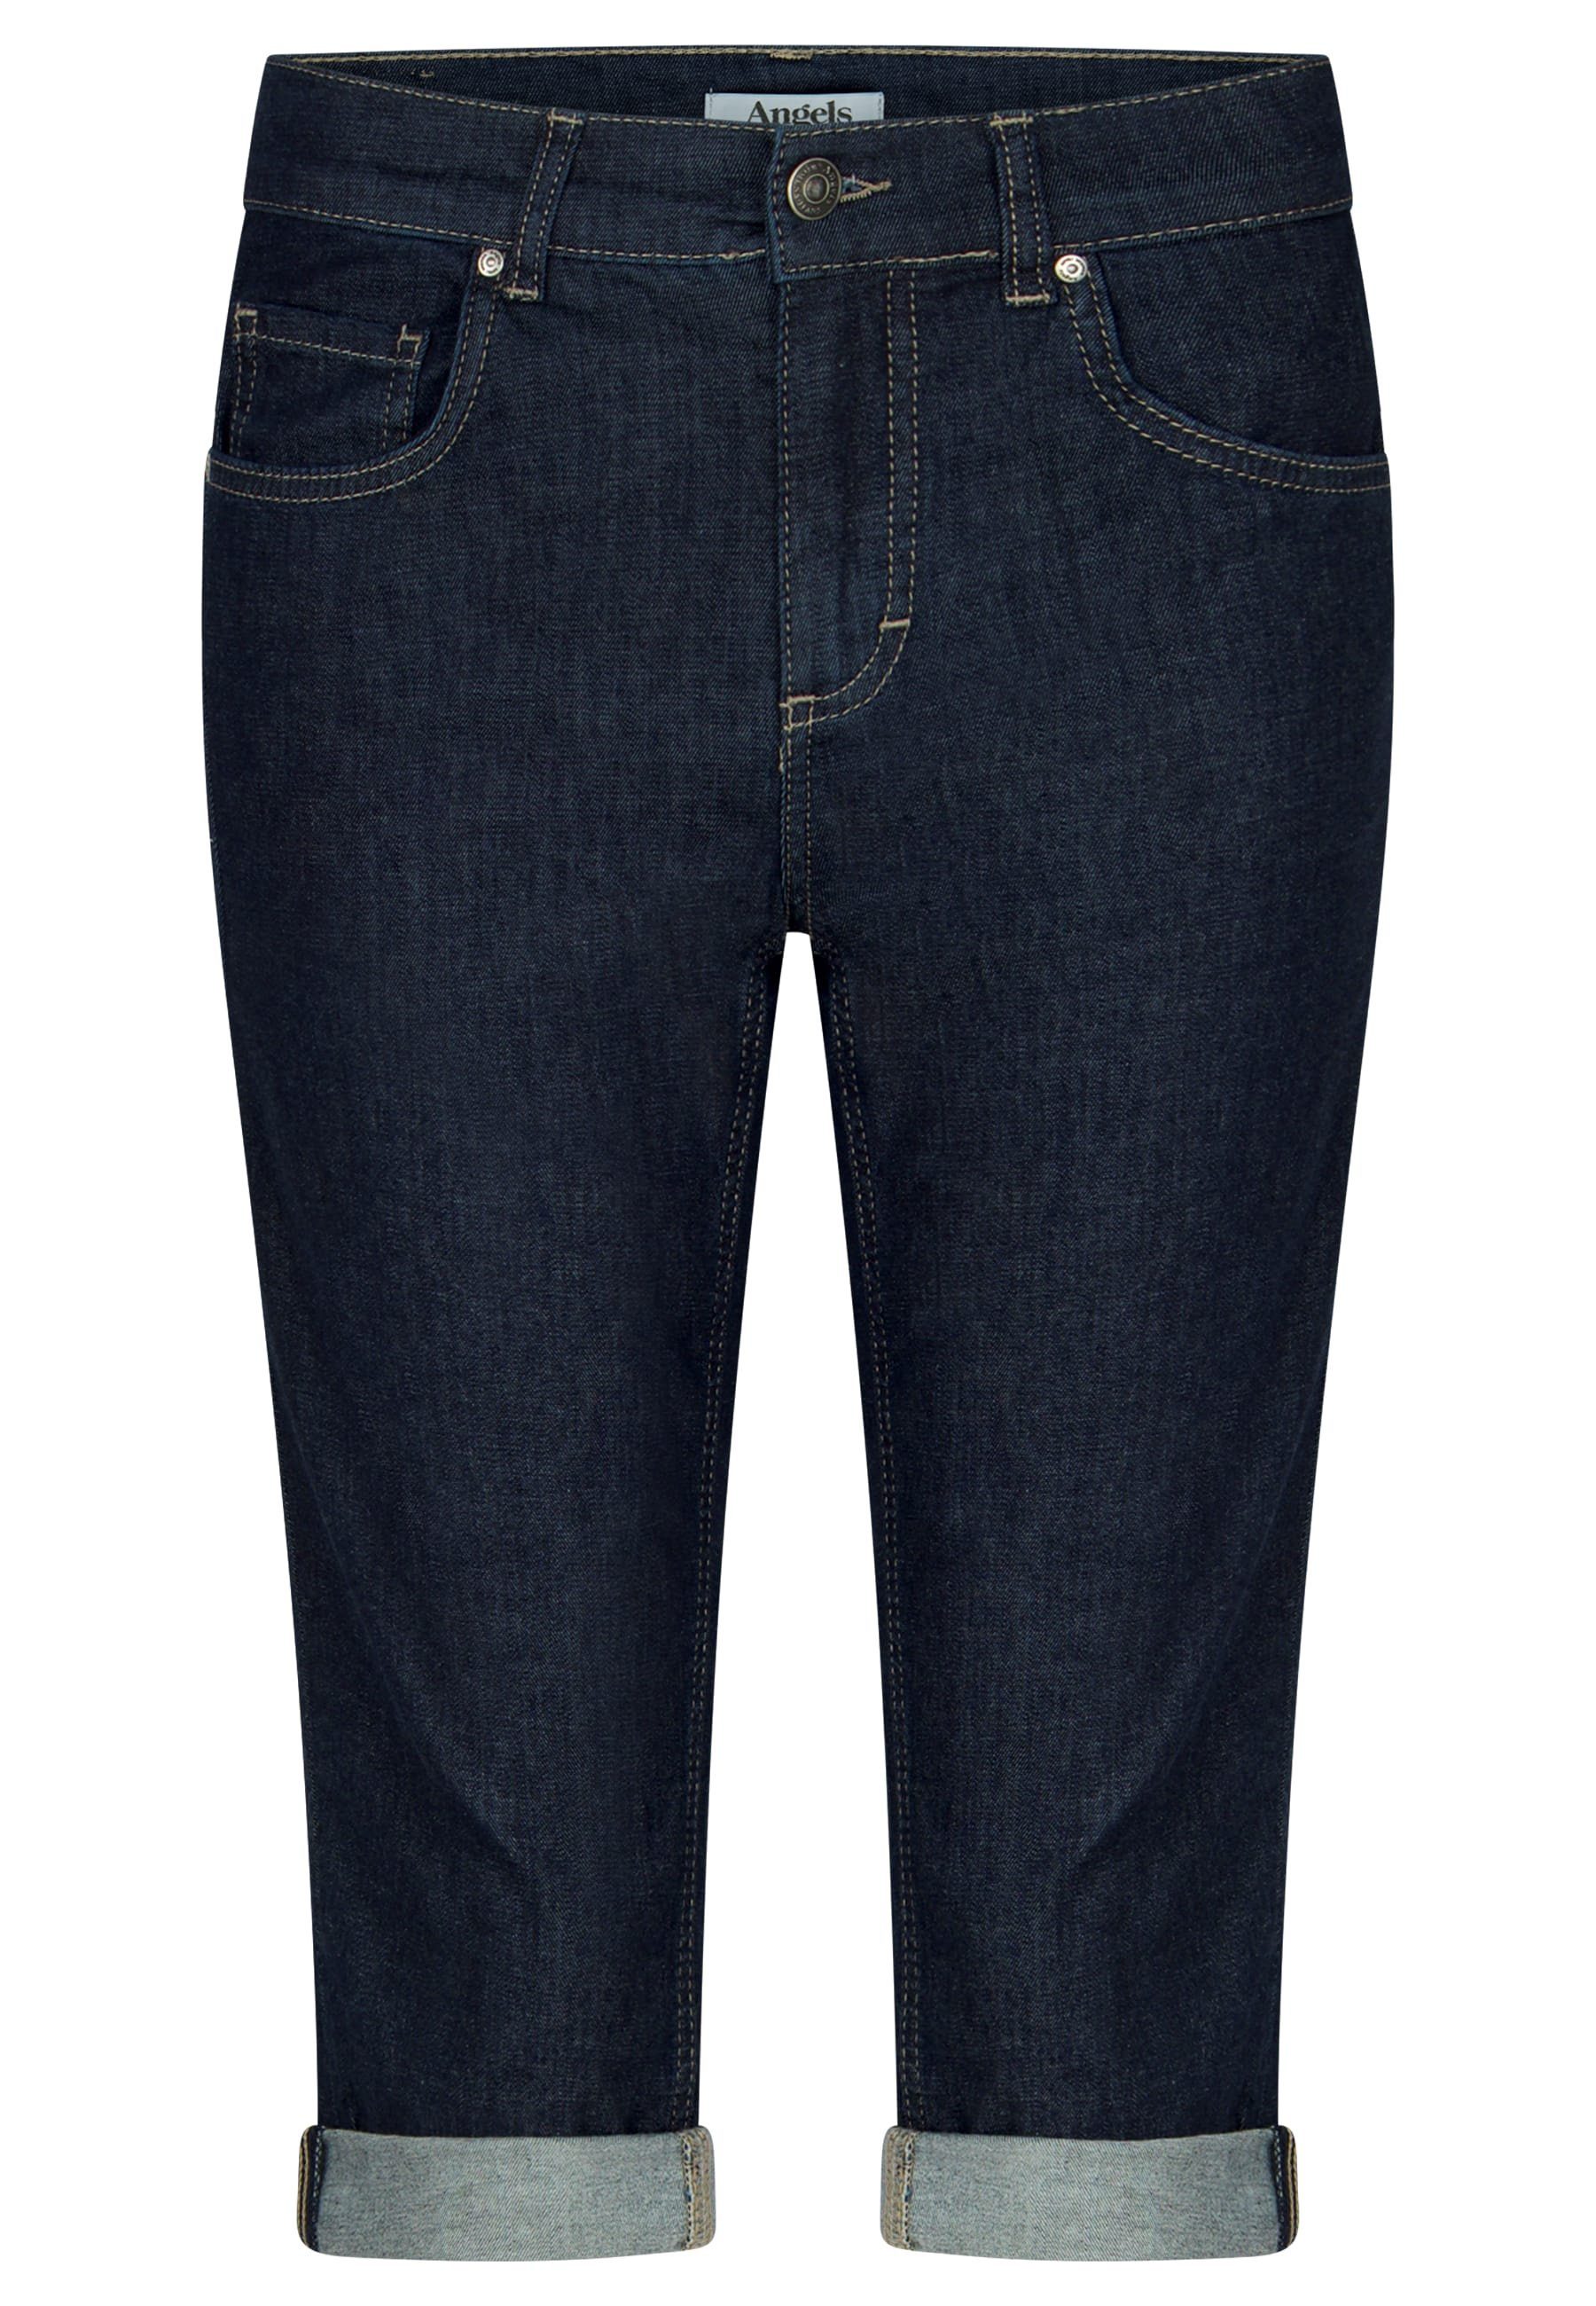 ANGELS 5-Pocket-Jeans Jeans Capri mit mit Label-Applikationen blau Used-Look TU